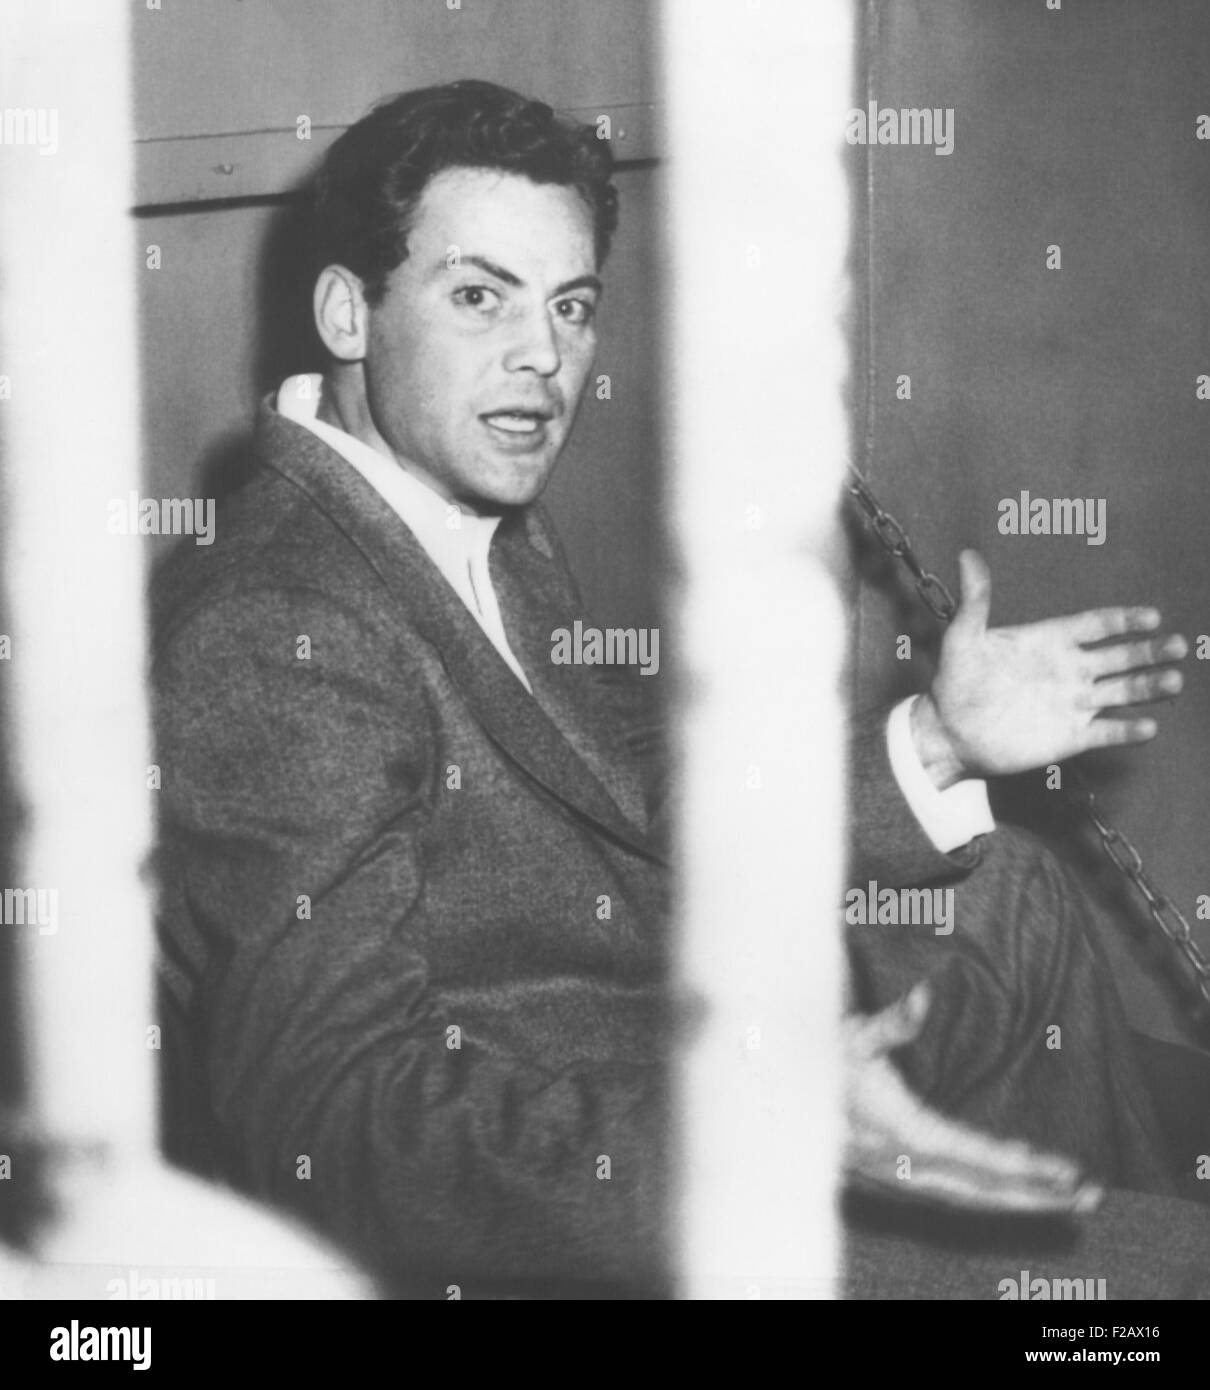 Attore John Agar, proteste fotografi prendendo la sua immagine dopo il suo azionamento ubriaco arresto. Febbraio 12, 1950. Il 29 enne attore Foto Stock